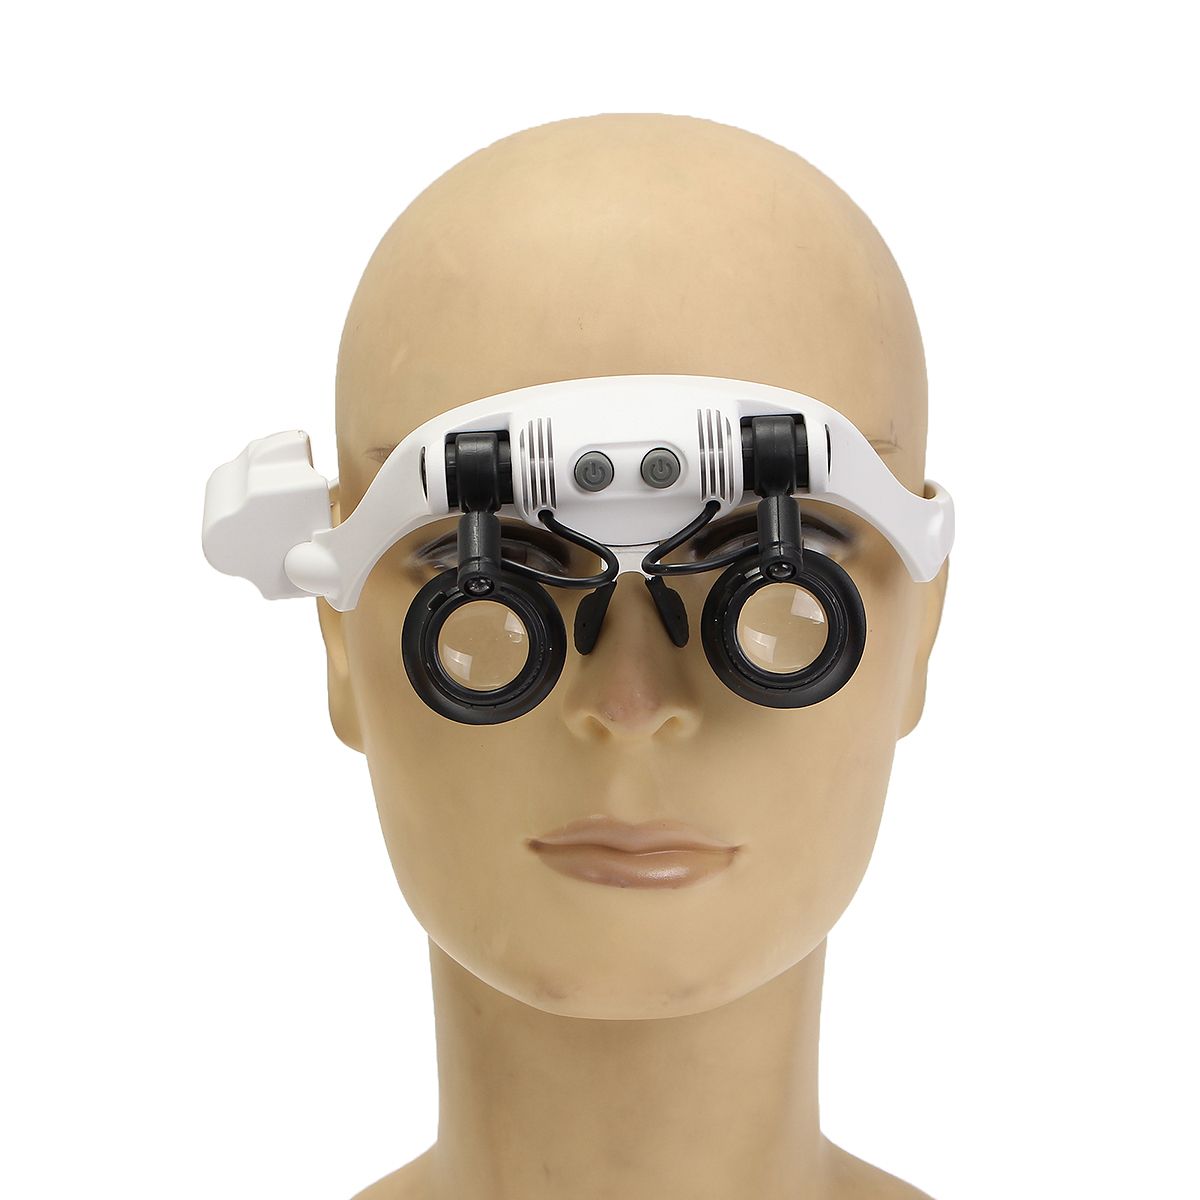 DANIU-Portable-Head-Wearing-Magnifying-Glass-10X-15X-20X-25X-LED-Double-Eye-Repair-Magnifier-Loupe-1067682